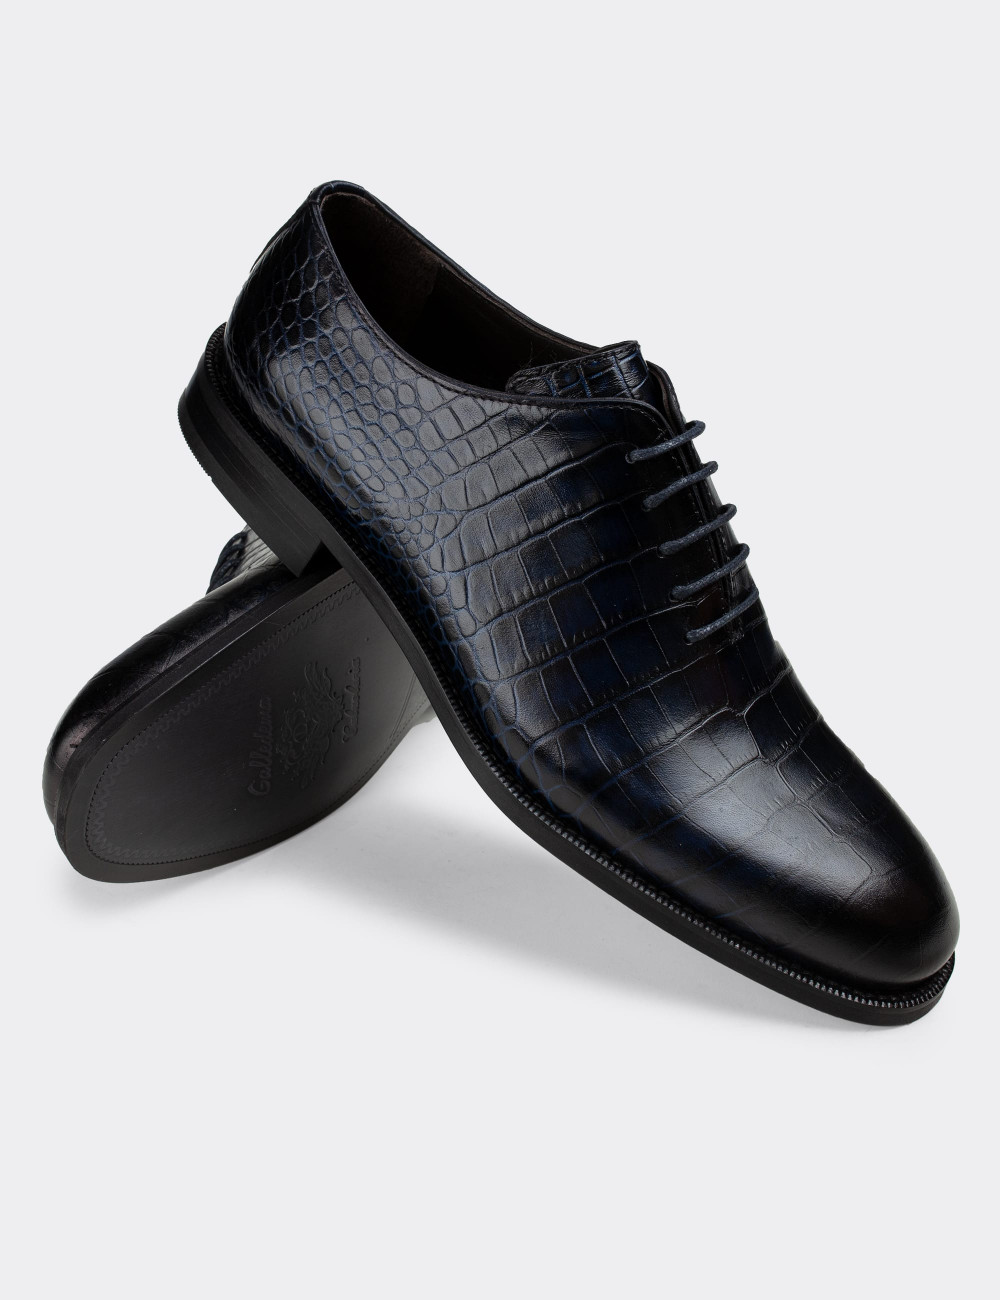 Hakiki Deri Lacivert Kroko Klasik Erkek Ayakkabı - 01830MLCVN01